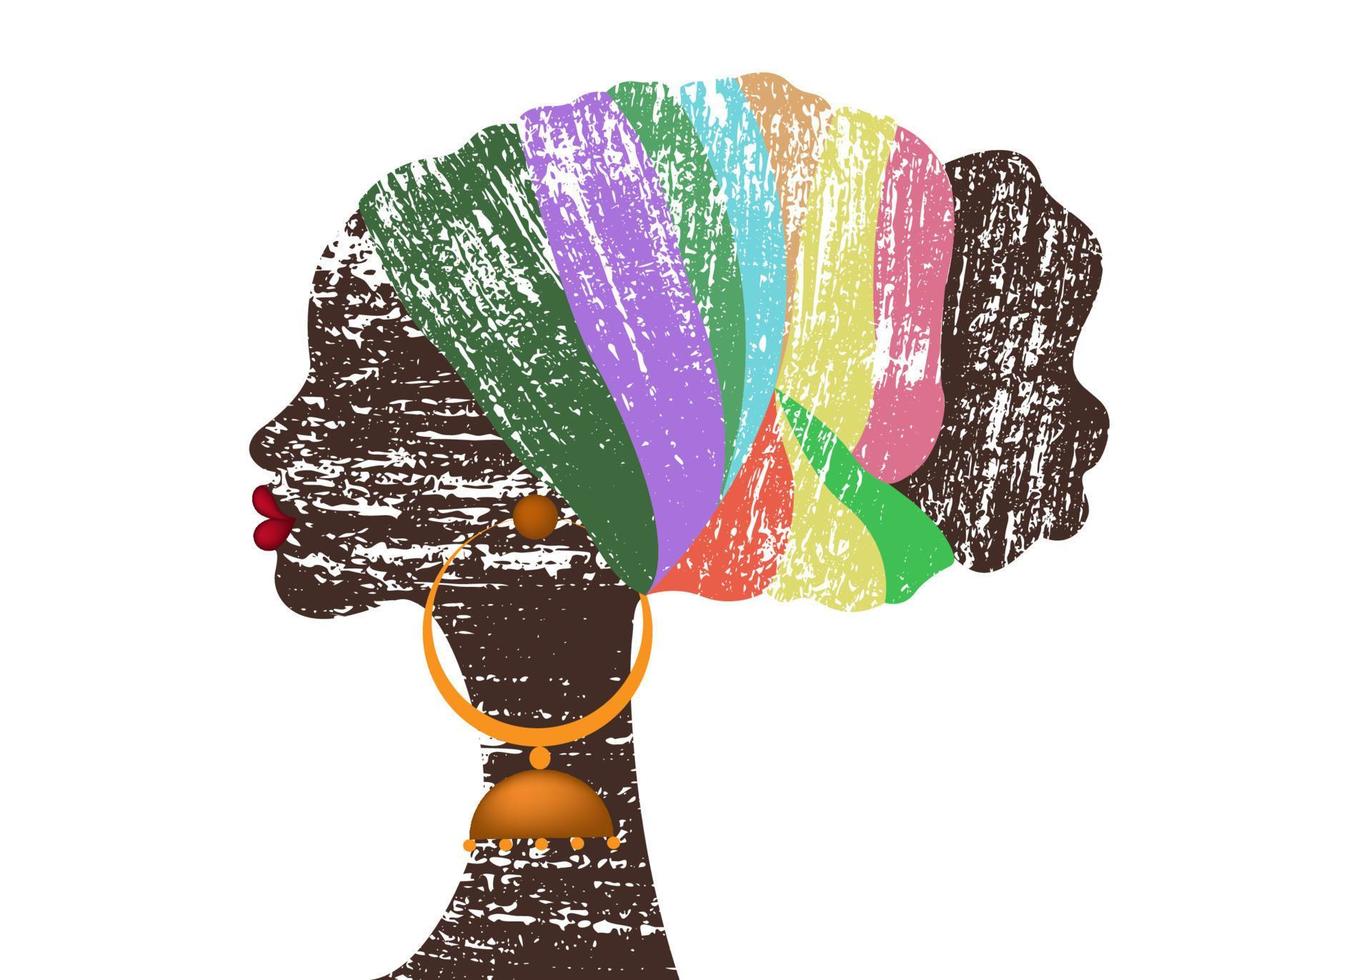 retrato linda mulher afro em estilo vintage retrô. shenbolen ankara headwrap mulheres africanas tradicionais headtie lenço turbante. cabeça de kente envolve design de tecido tribal africano. vetor isolado em branco